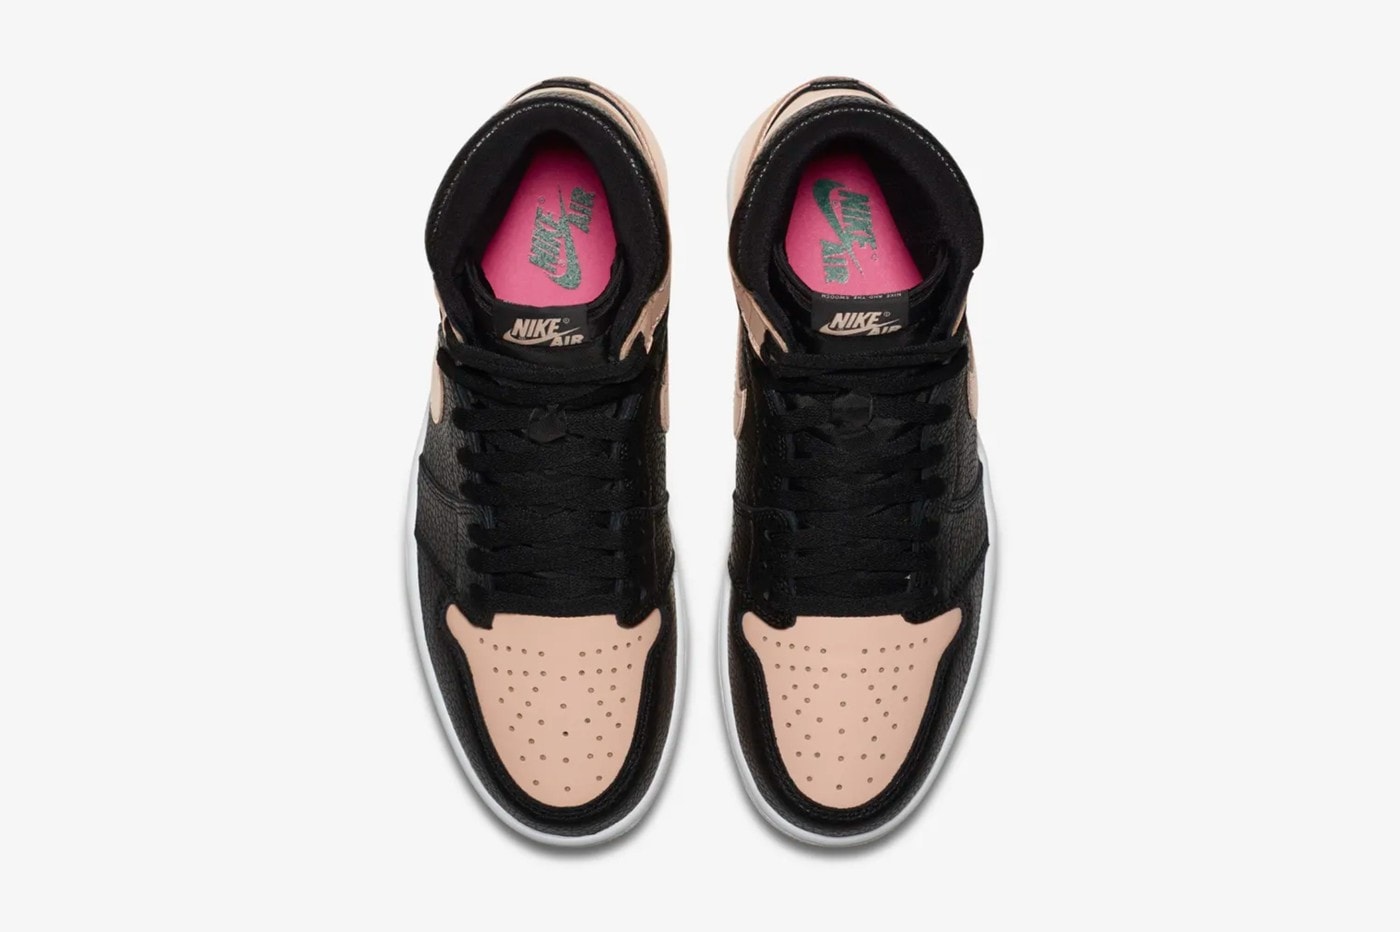 Air Jordan 1 全新配色设计「Hyper Pink」